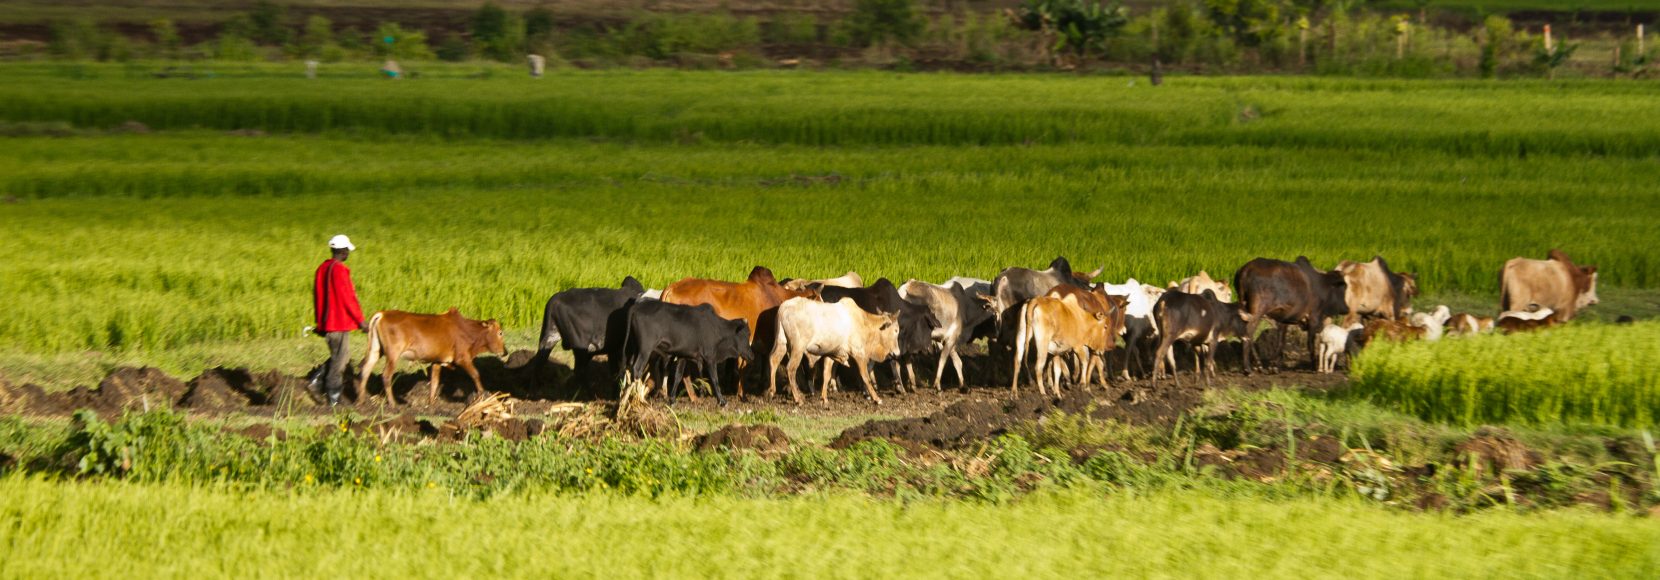 man herding cattle in field in Kenya